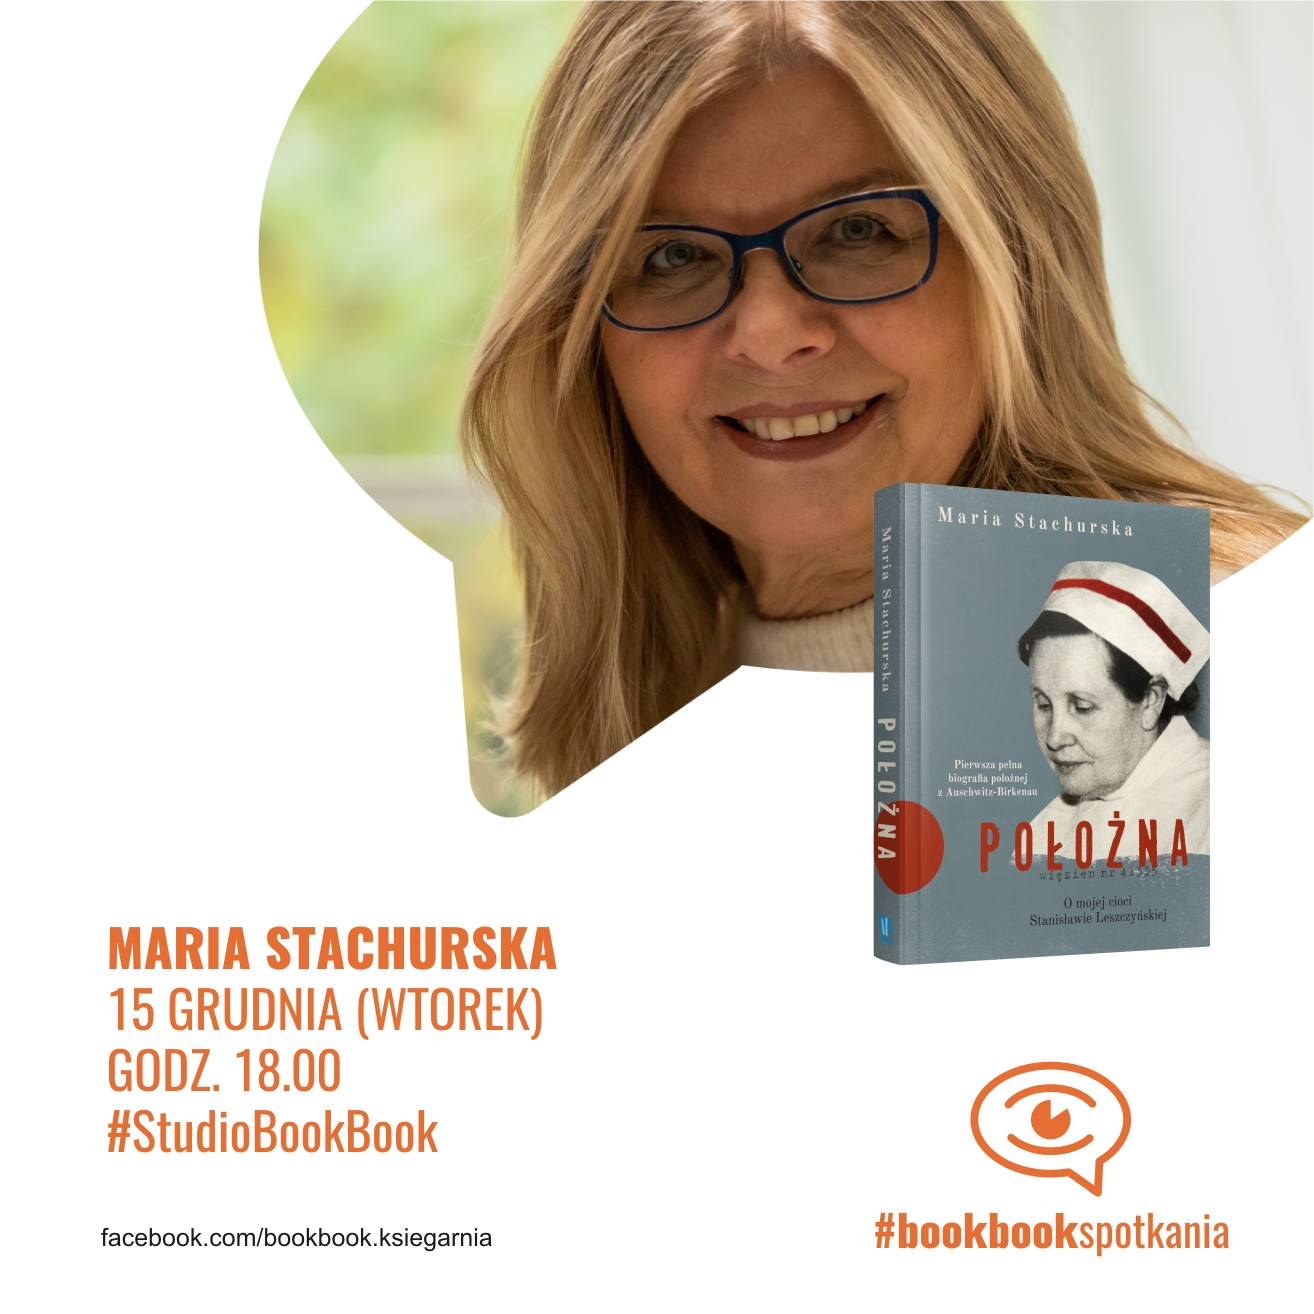 Spotkanie w Studio BookBook:  z Marią Stachurską, autorką książki "Położna".